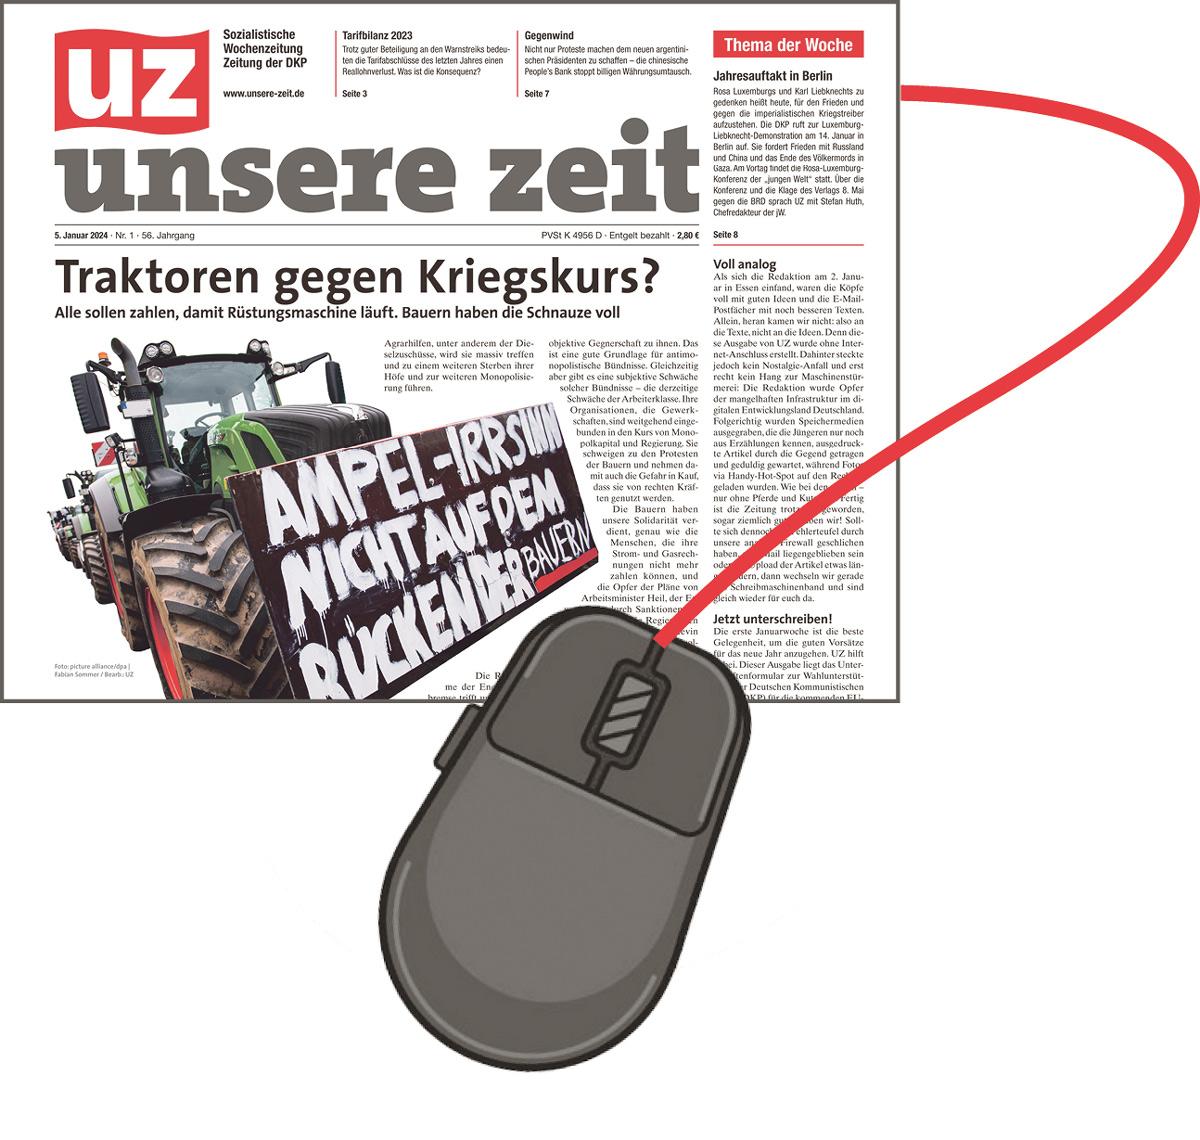 UZ Maus2 - Neue Übersichtlichkeit - Internetauftritt, Neuausrichtung, UZ - Zeitung der DKP - Vermischtes